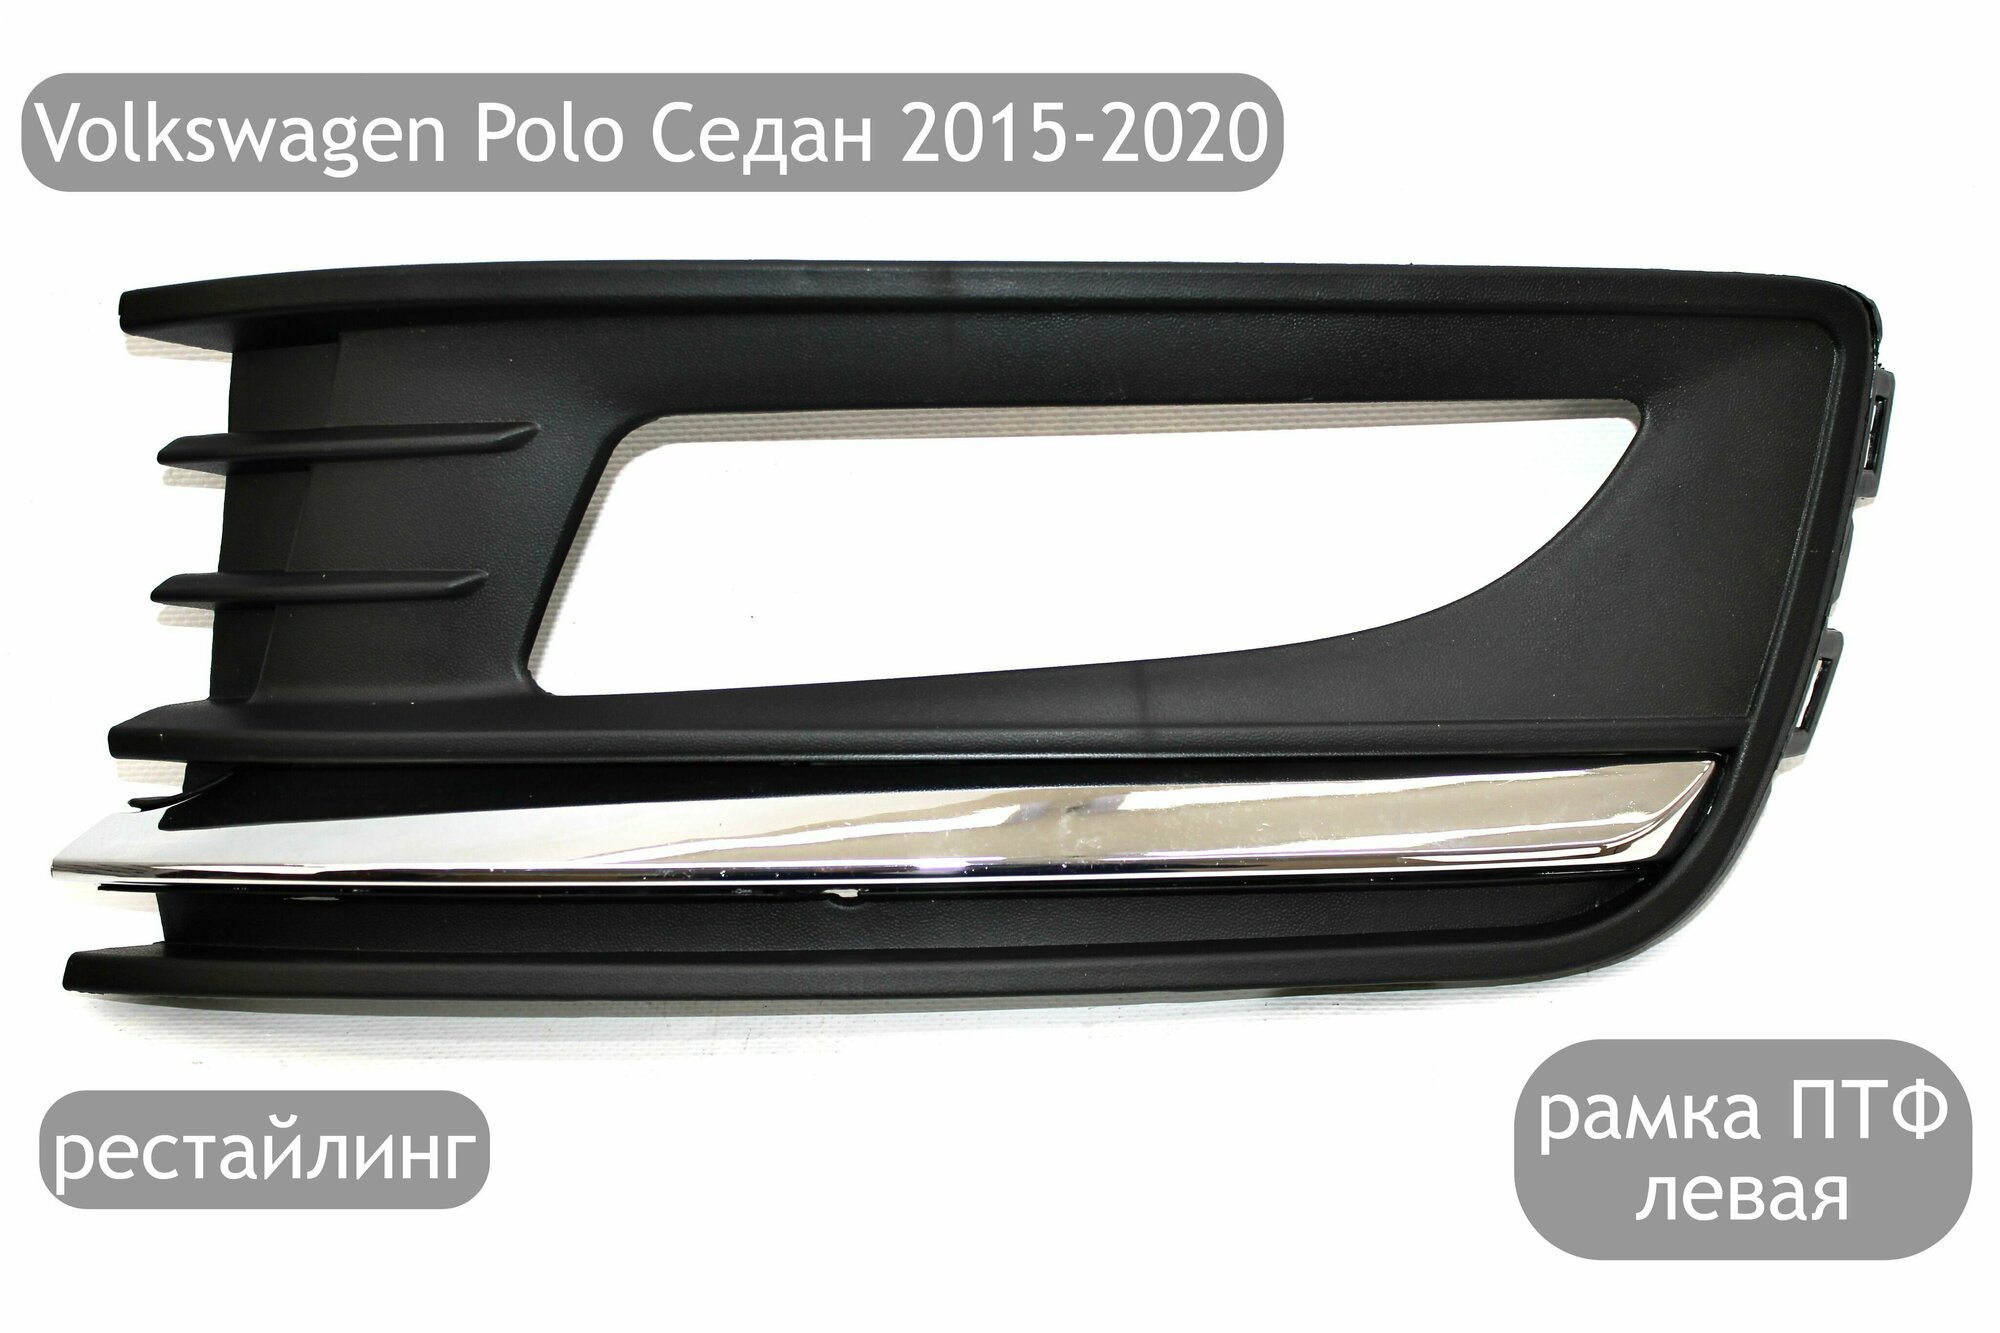 Рамка противотуманной фары левая с хром молдингом для Volkswagen Polo Седан 2015-2020 (рестайлинг)